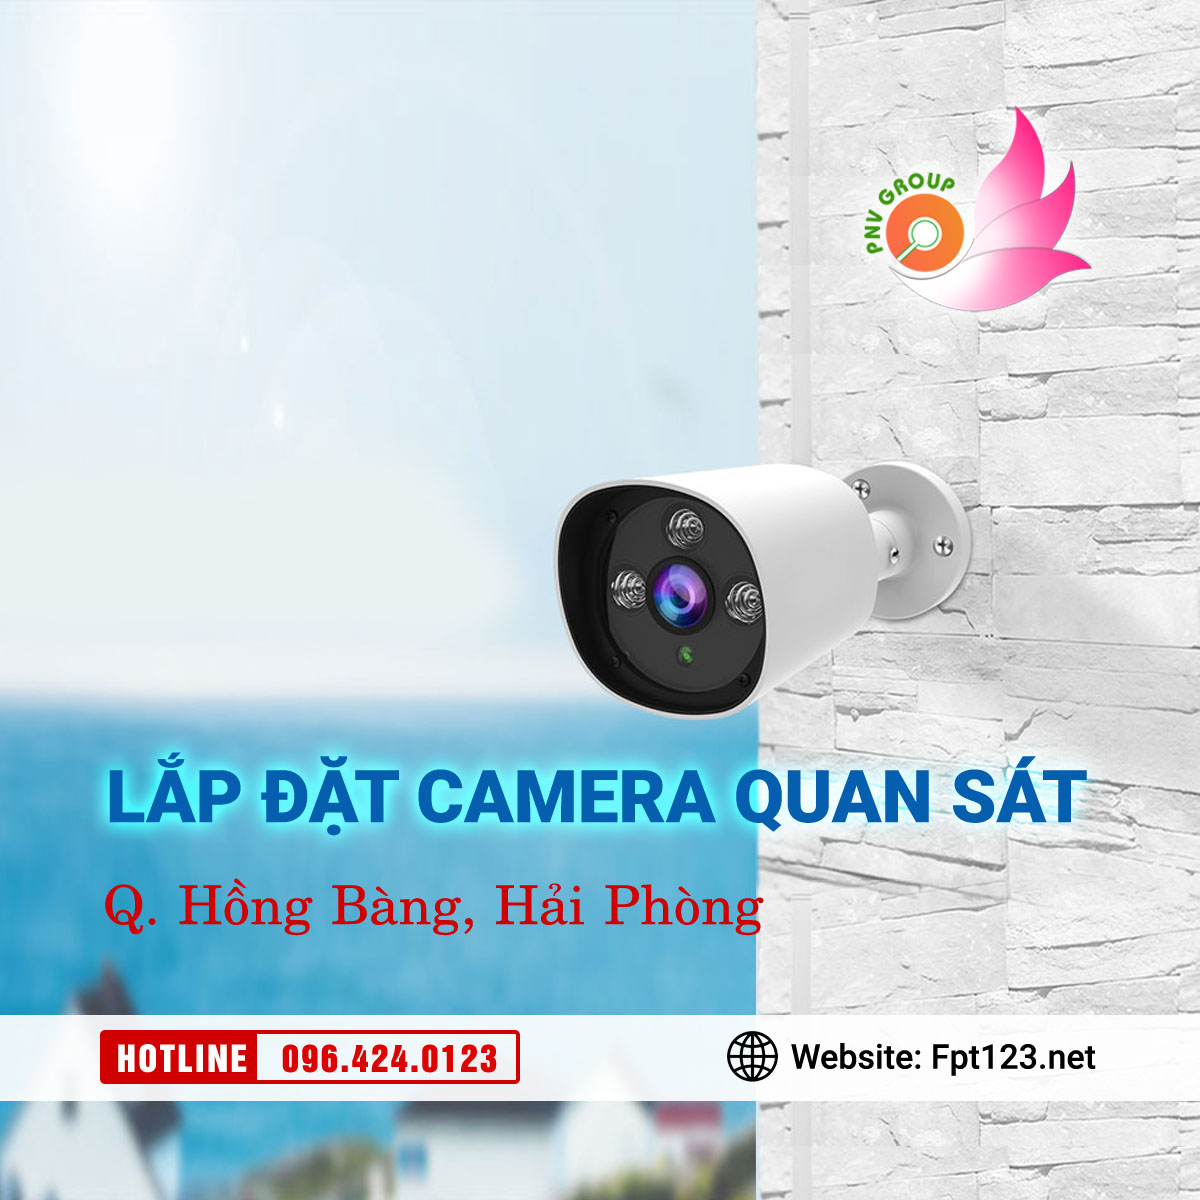 Lắp đặt camera quan sát ở quận Hồng Bàng